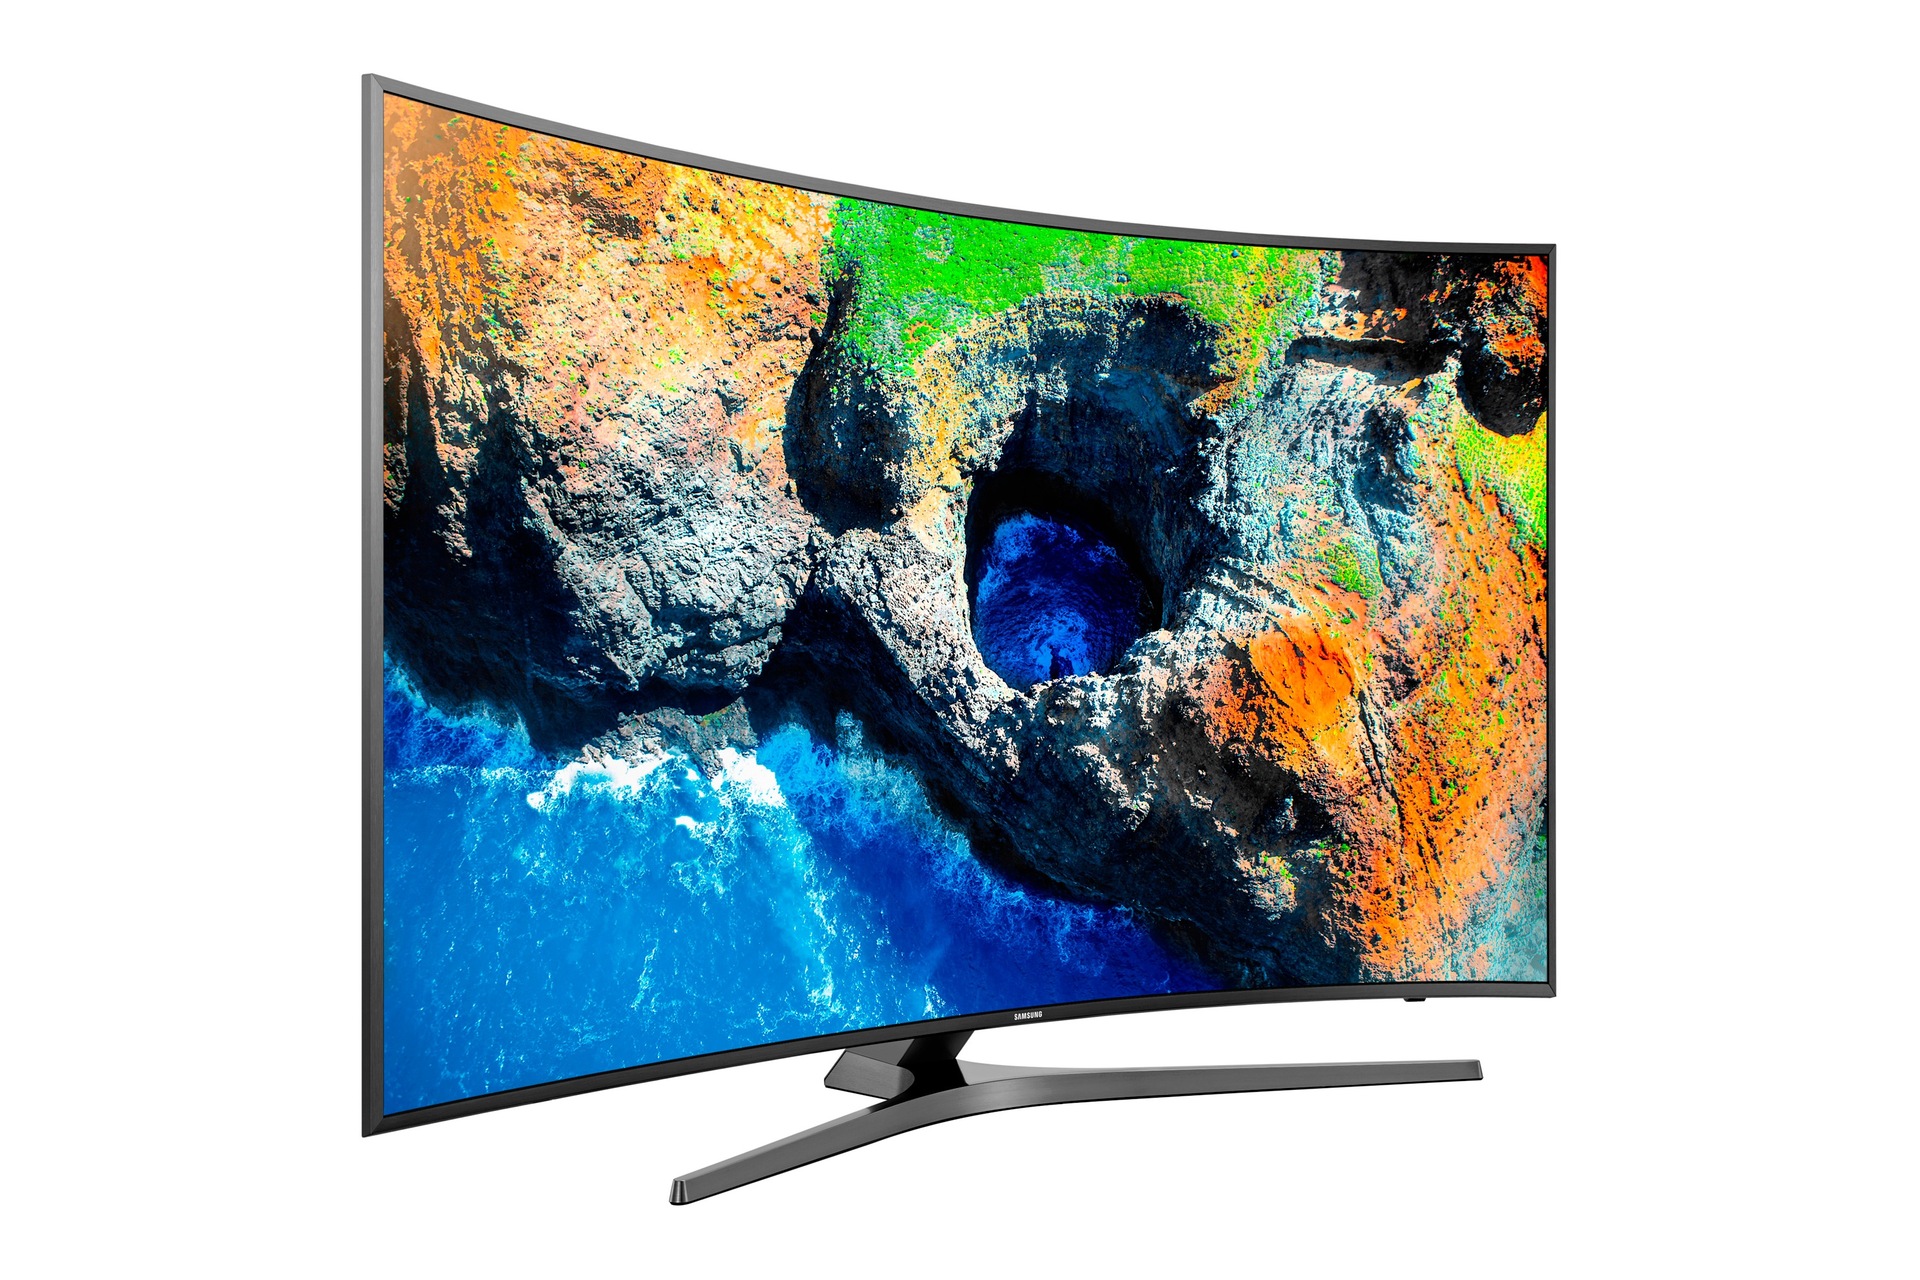 Samsung UHD TV Serie U9000, televisores con pantalla curva y resolución 4K